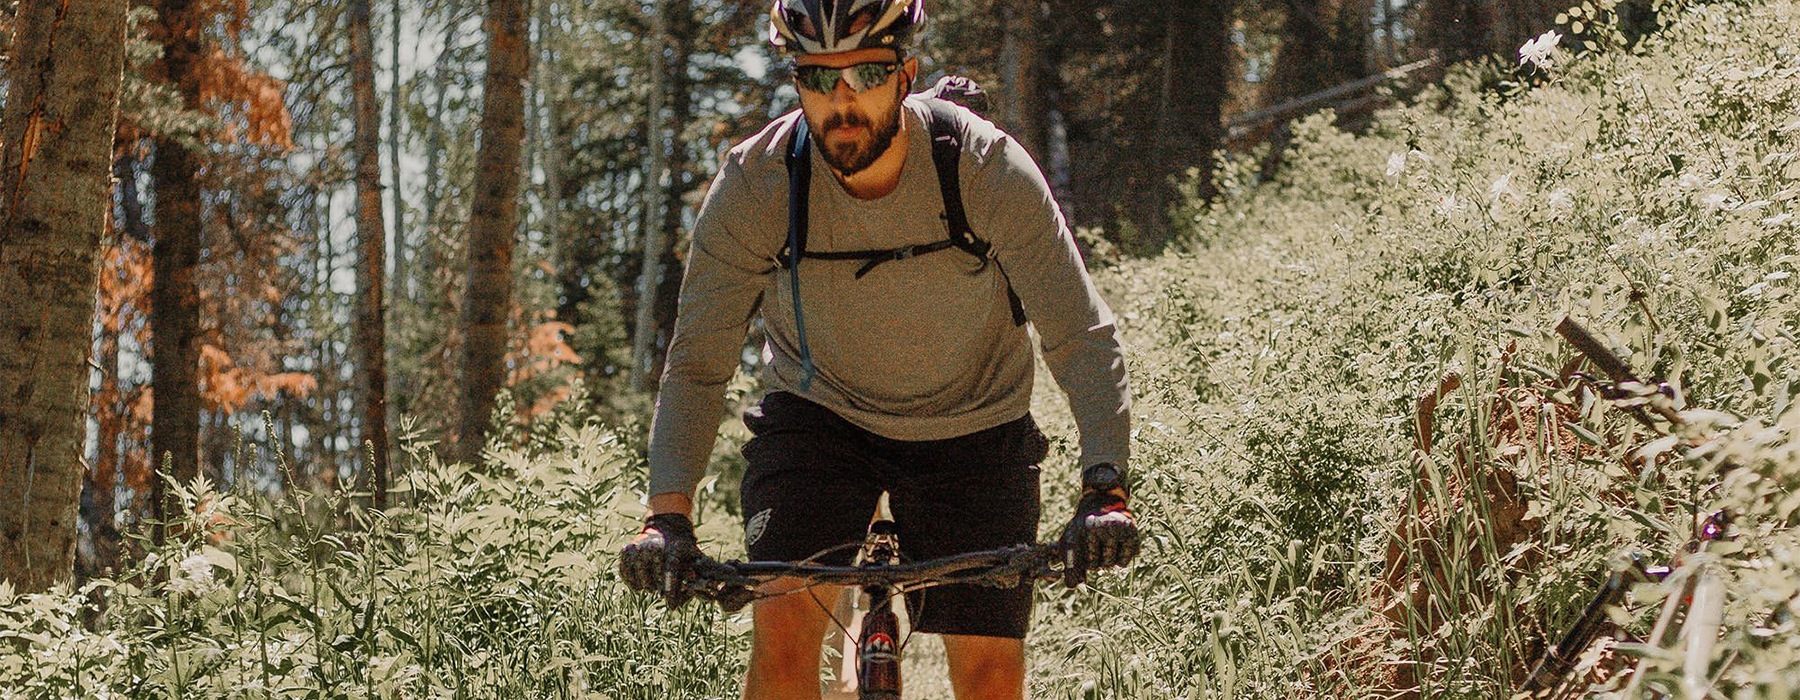 man mountain biking